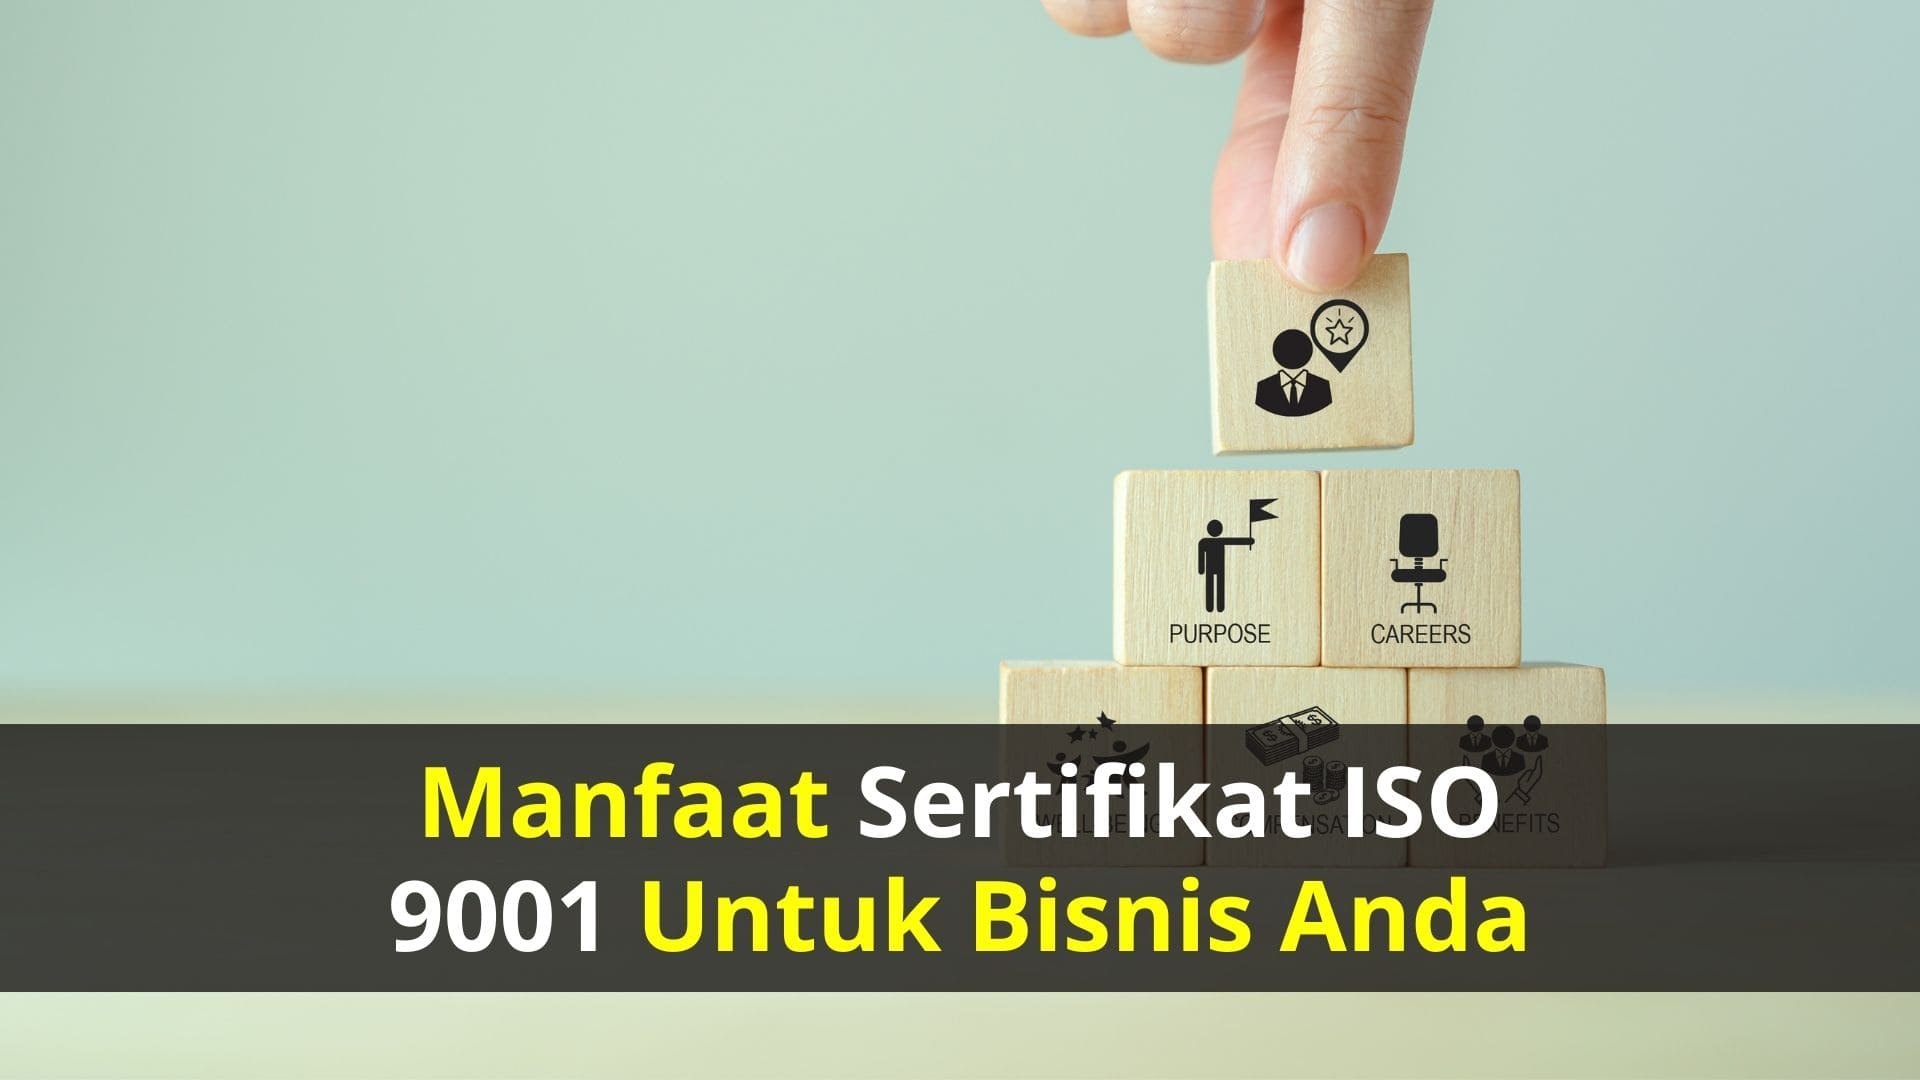 Manfaat Sertifikat ISO 9001 untuk Bisnis Anda